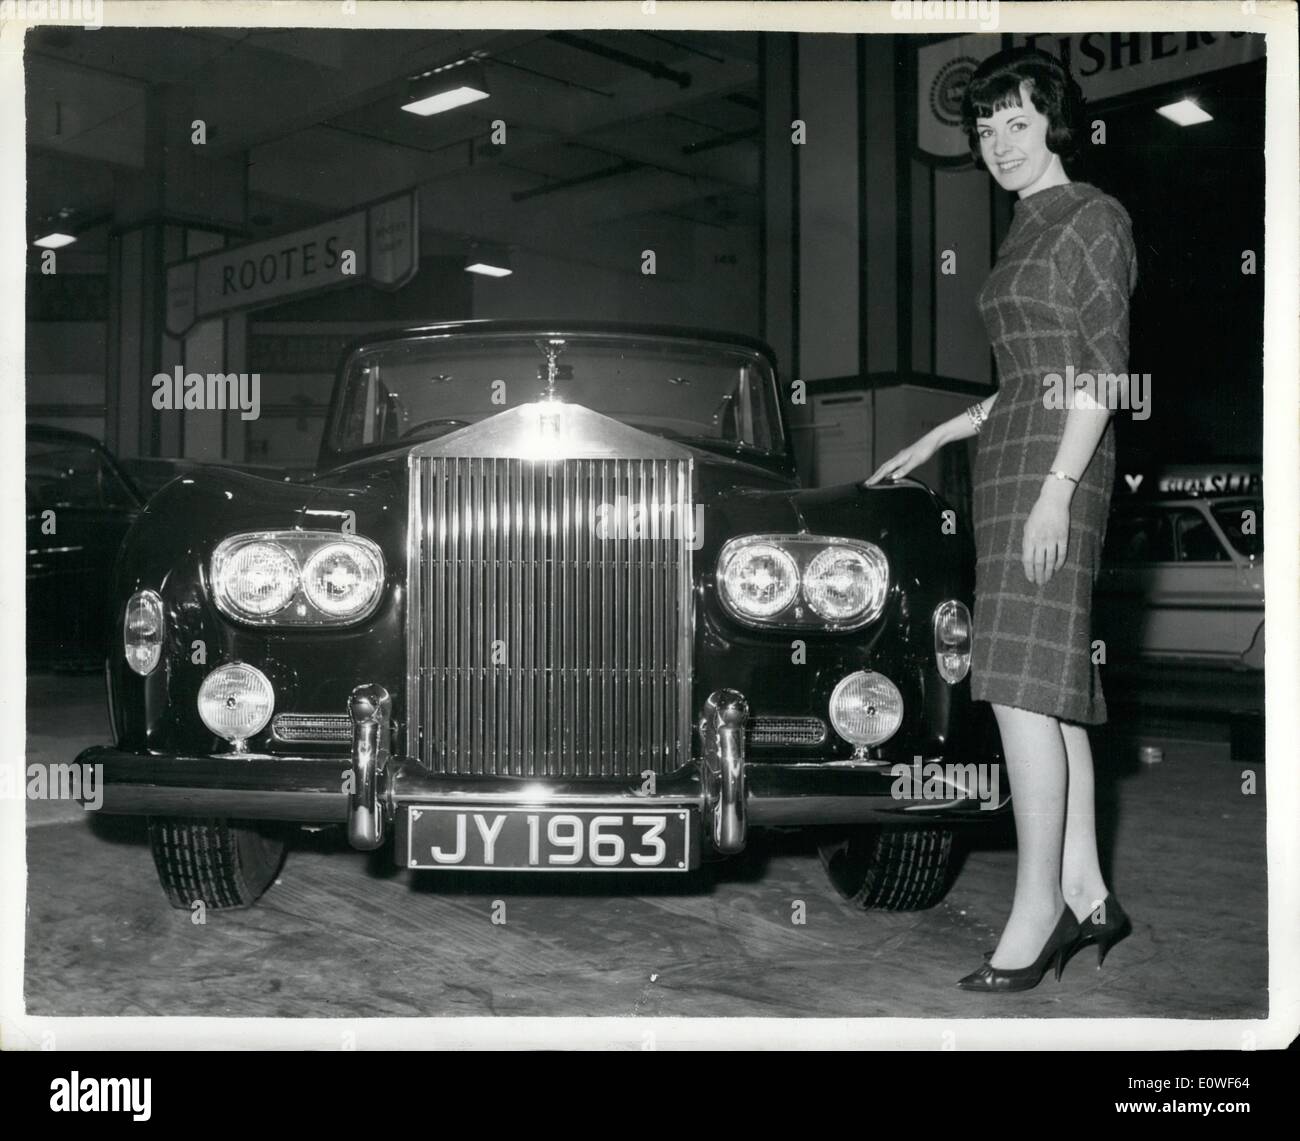 10 octobre 1962 - Nouvelle Rolls Royce dans les salons automobiles. La Rolls Royce Silver Cloud III sera présentée à l'assemblée annuelle de l'ouverture du salon à Earls Court, Londres, demain. Au prix 11 000 &pound;, c'est la première Rolls Royce à intégrer double-phares. Sont équipés d'un réfrigérateur et télévision. Photo montre : La nouvelle Rolls Royce Silver Cloud III images aujourd'hui. Banque D'Images